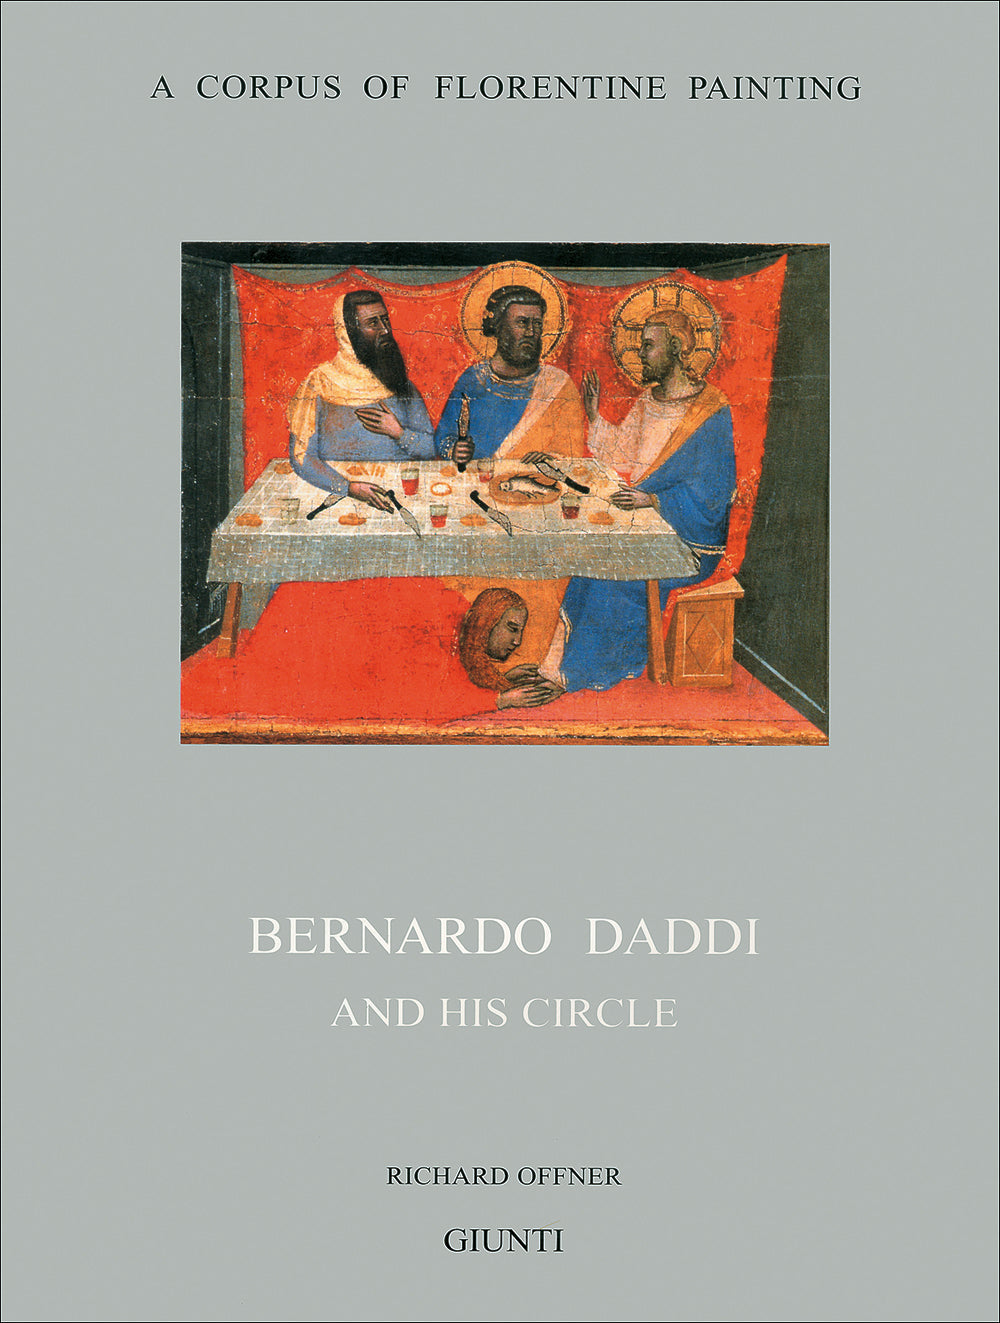 Bernardo Daddi and his circle::Section III, volume V